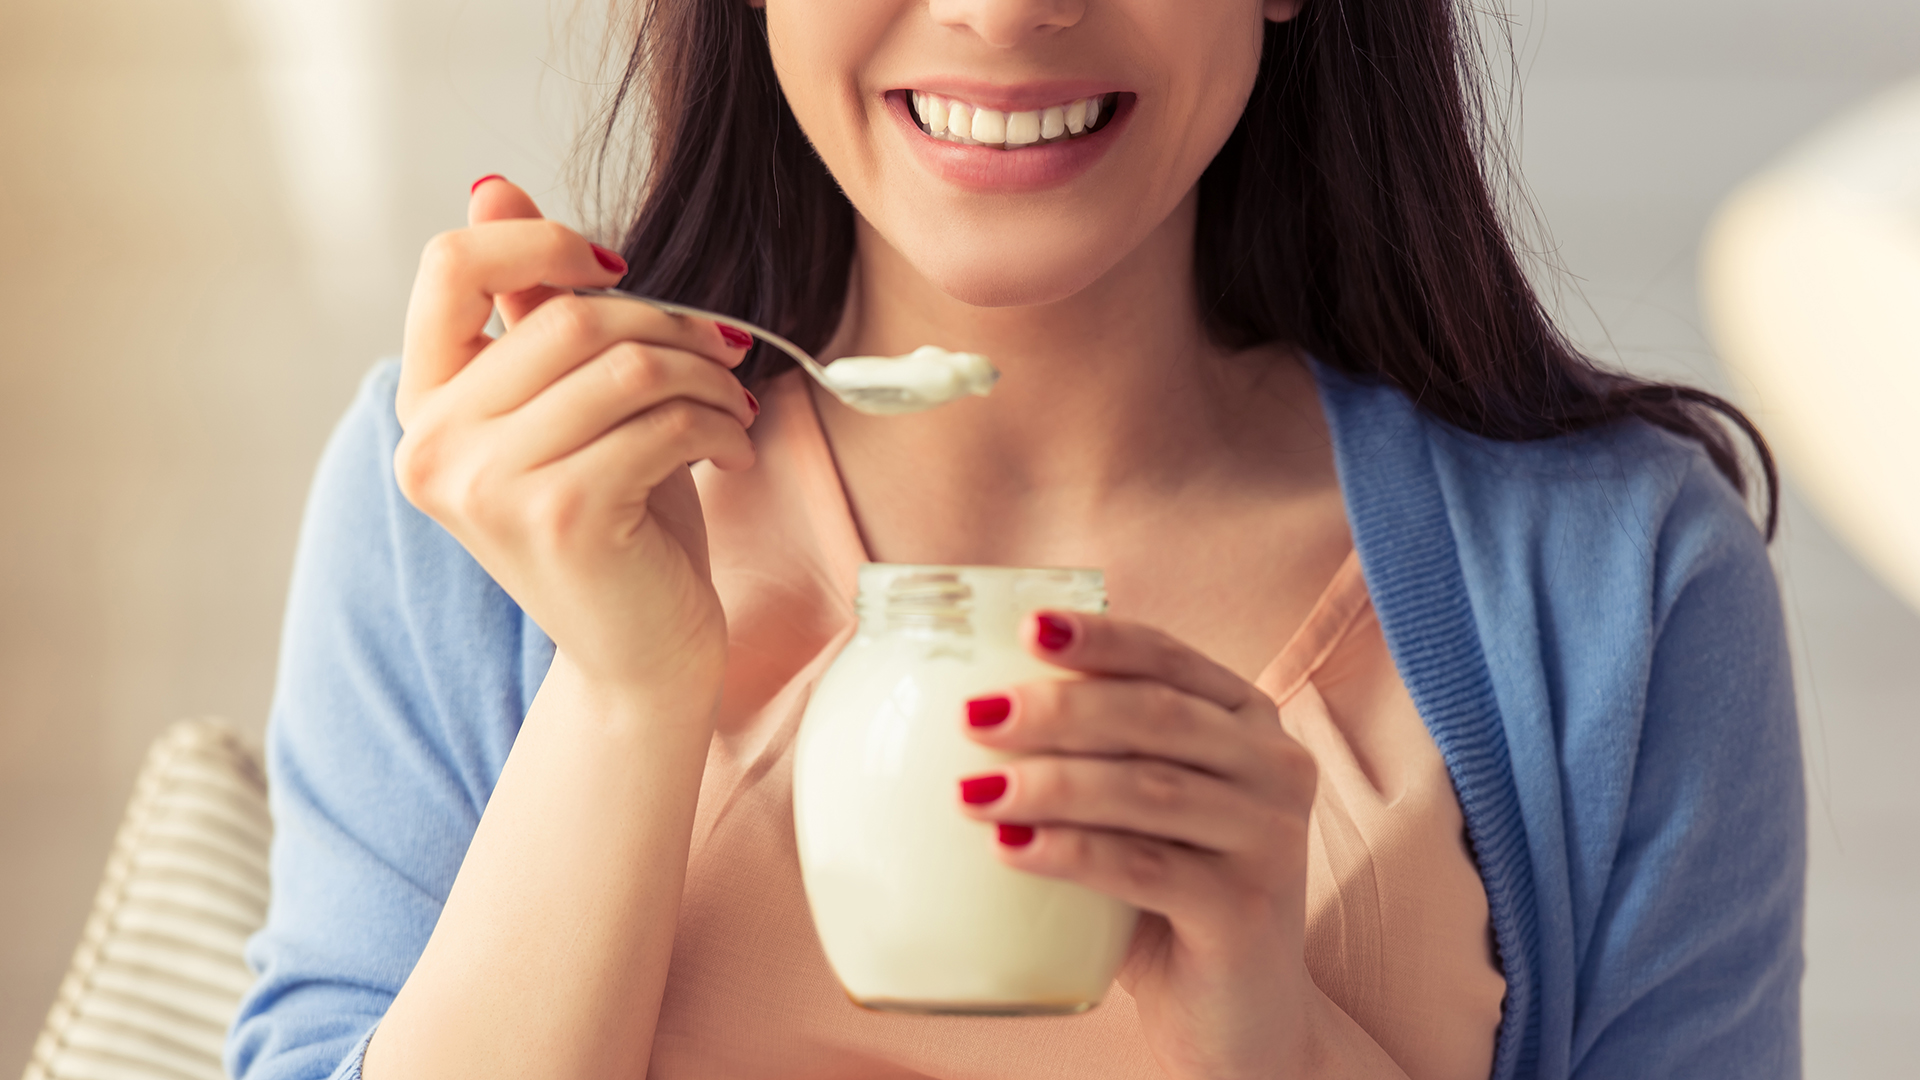 El yogurt es recomendado para recomponer la flora intestinal, pero aconsejan no incorporarlo desde el comienzo en una dieta astringente (Getty)